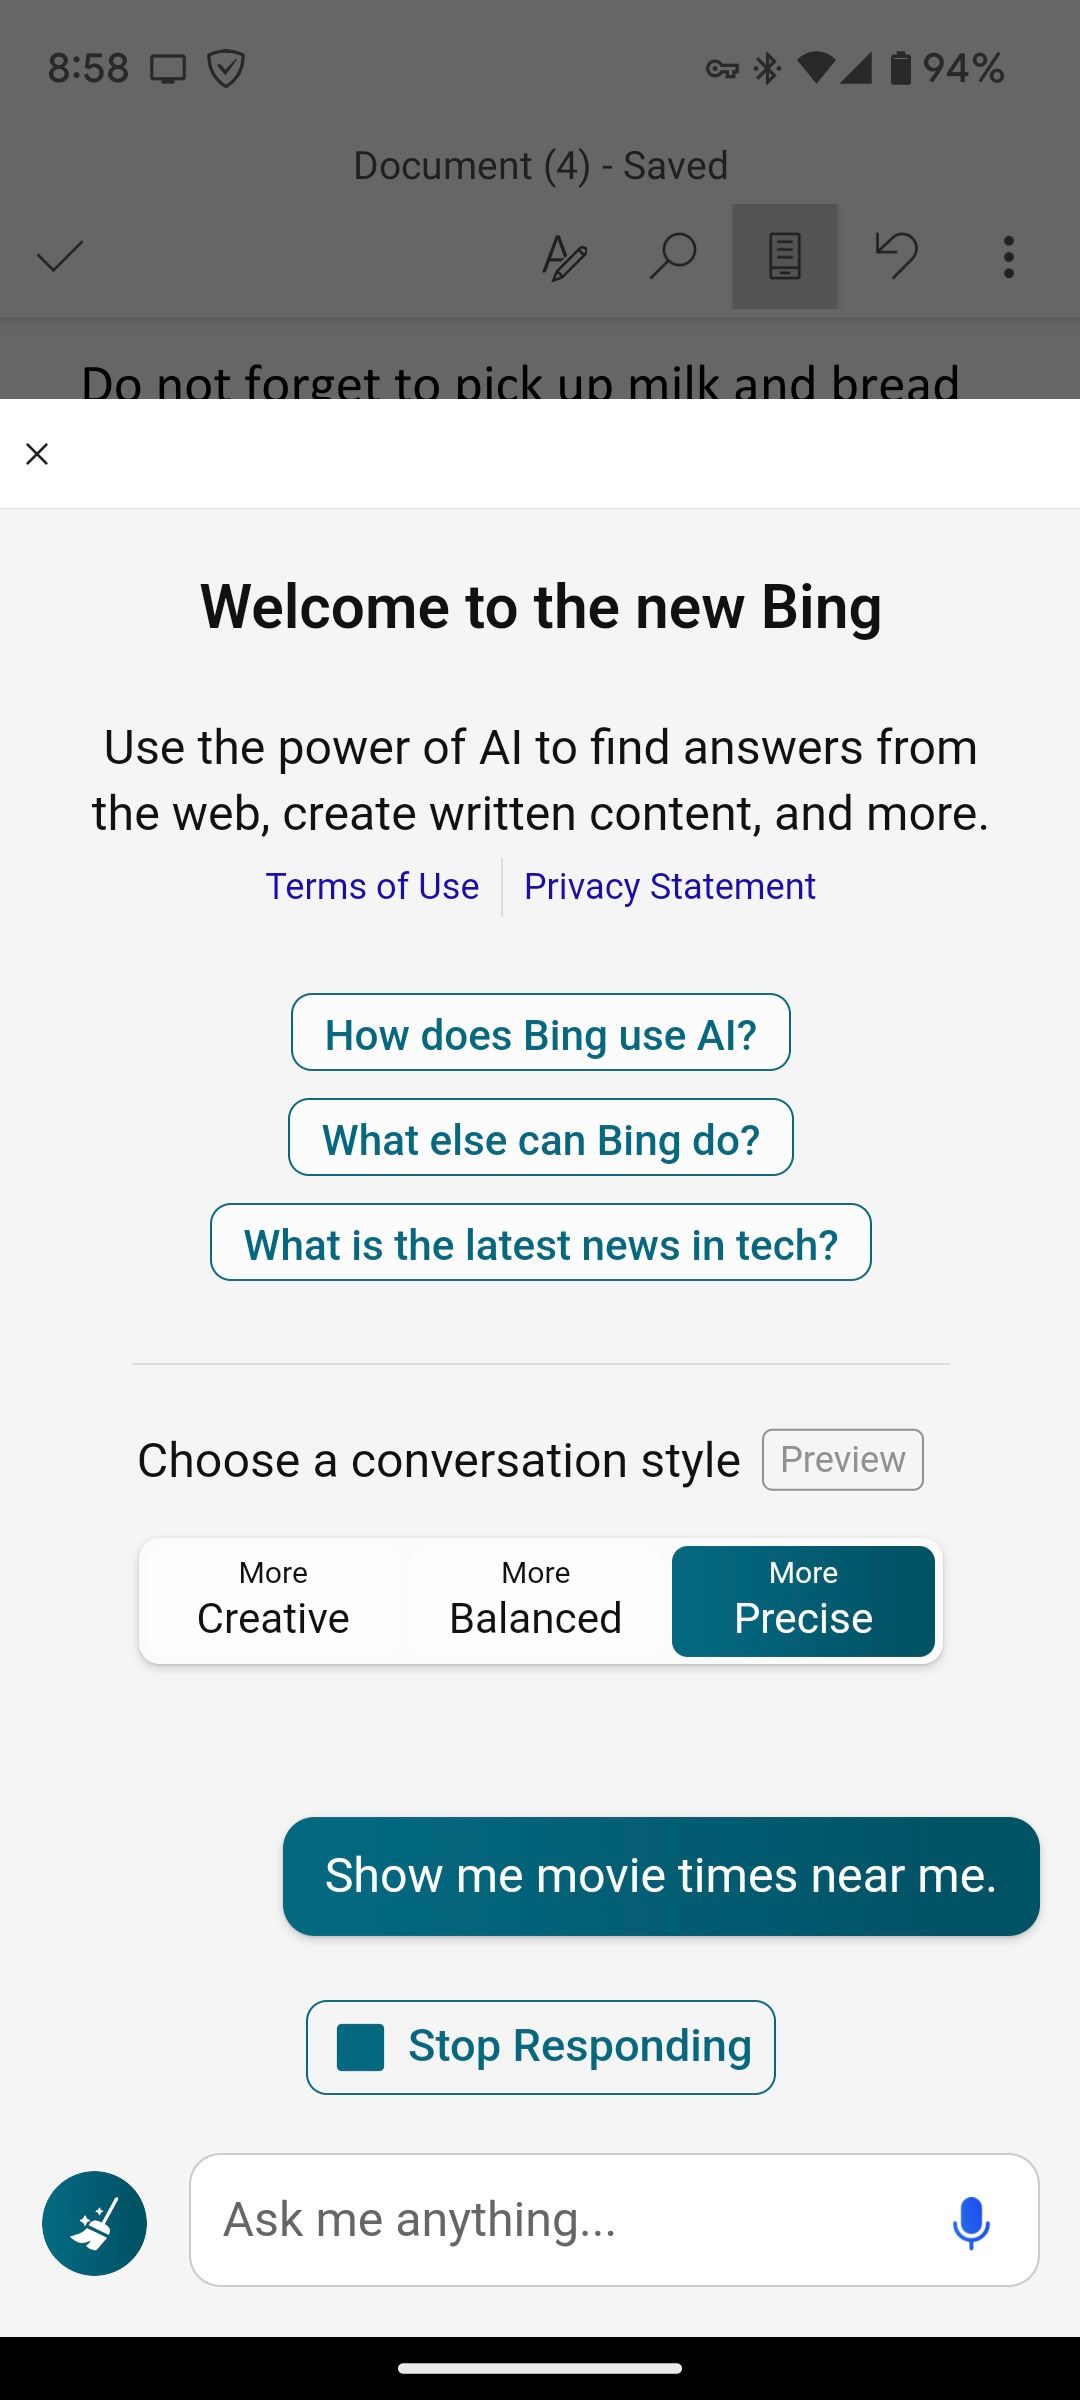 Contoh penggunaan obrolan di Bing AI melalui SwiftKey Beta